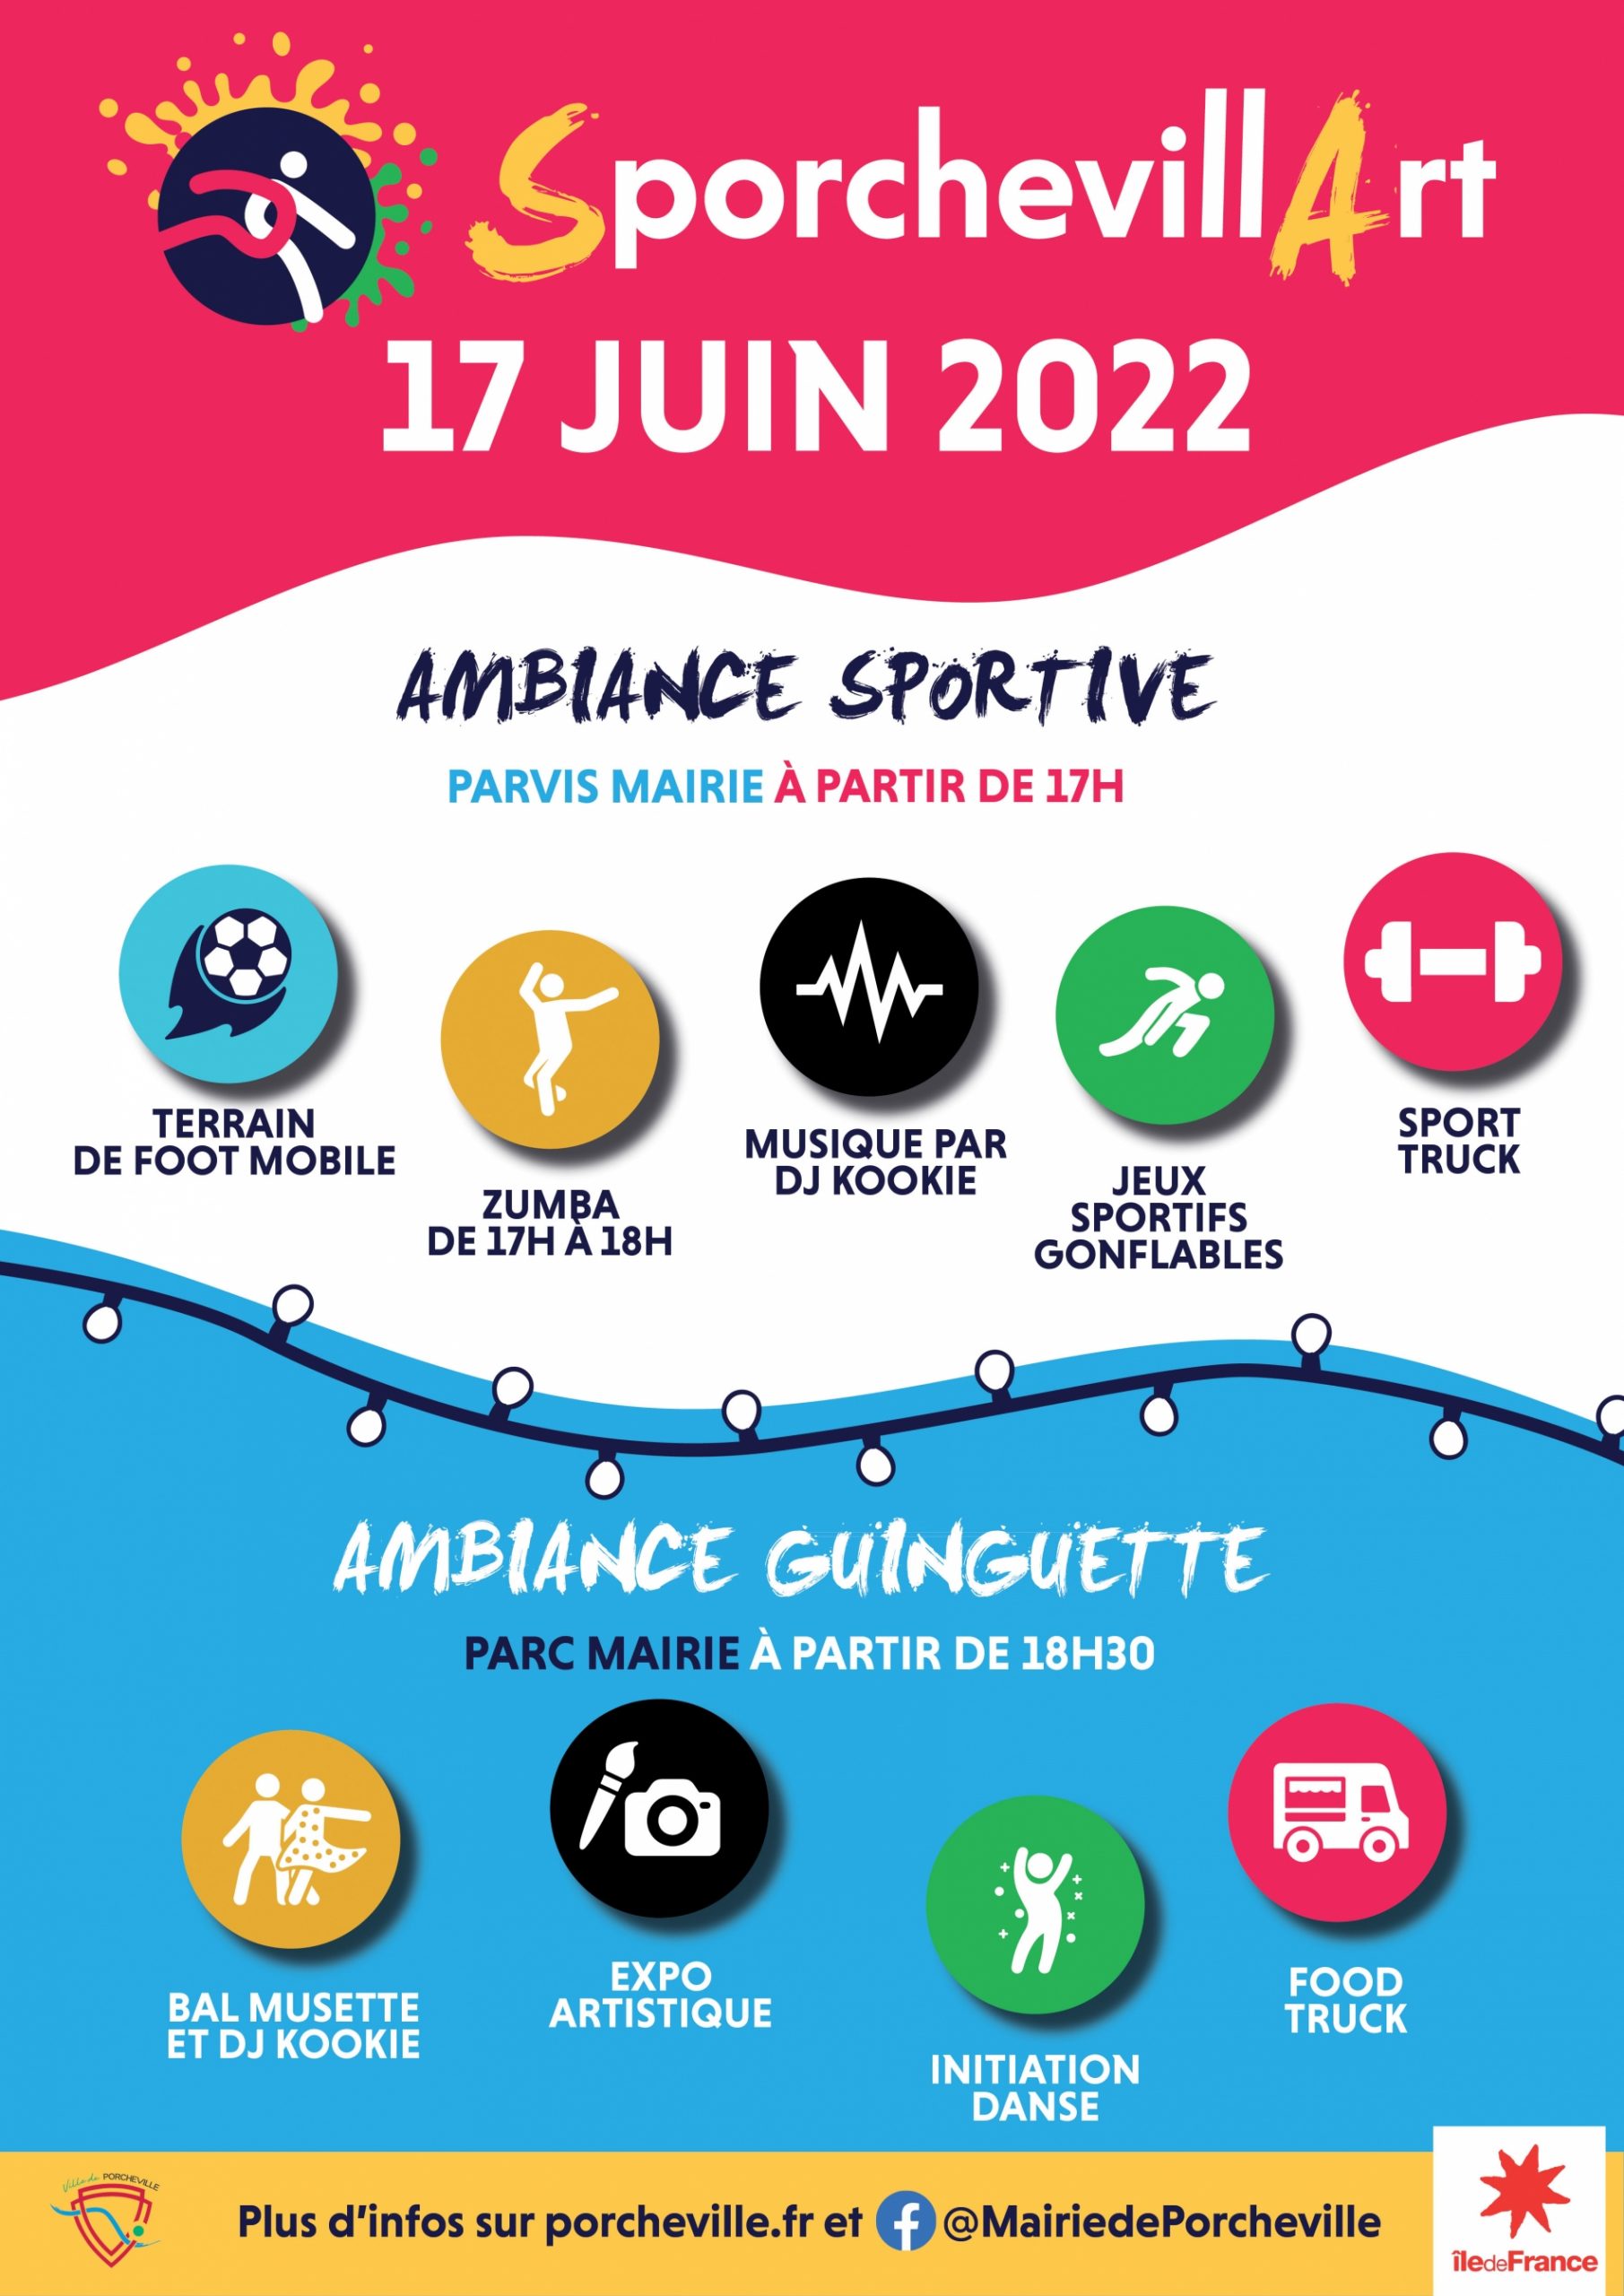 Une soirée d'animations sportives et culturelles est organisée à Porcheville le vendredi 17 juin 2022